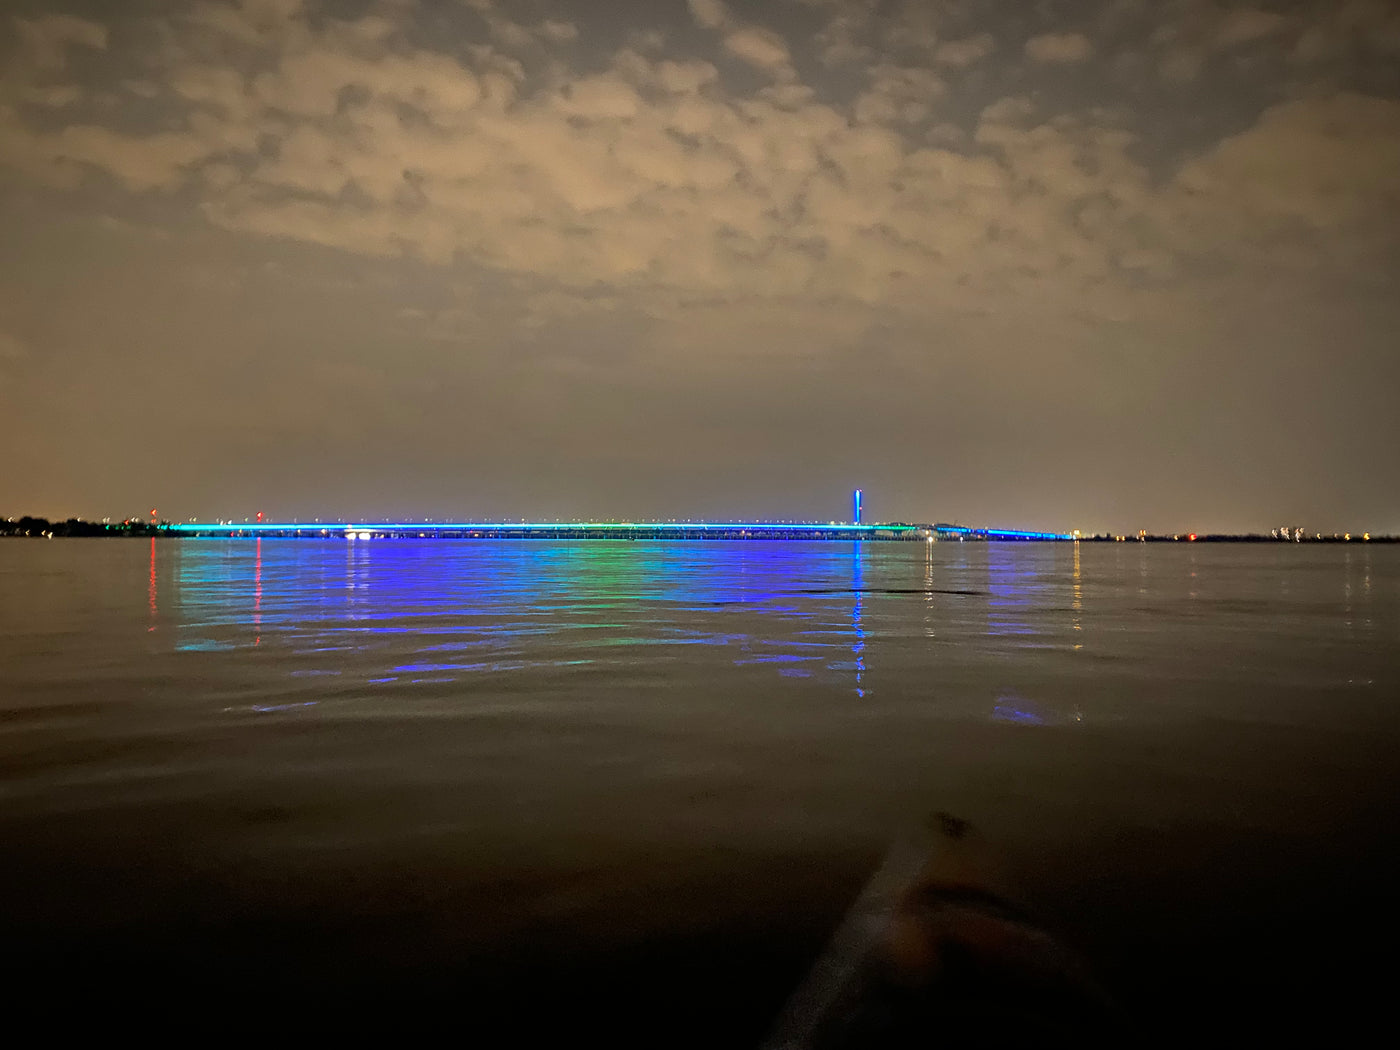 FEUX D'ARTIFICE EN TRIMARAN PNEUMATIQUE (BATEAU)- pont Samuel-De Champlain et centre-ville illuminés